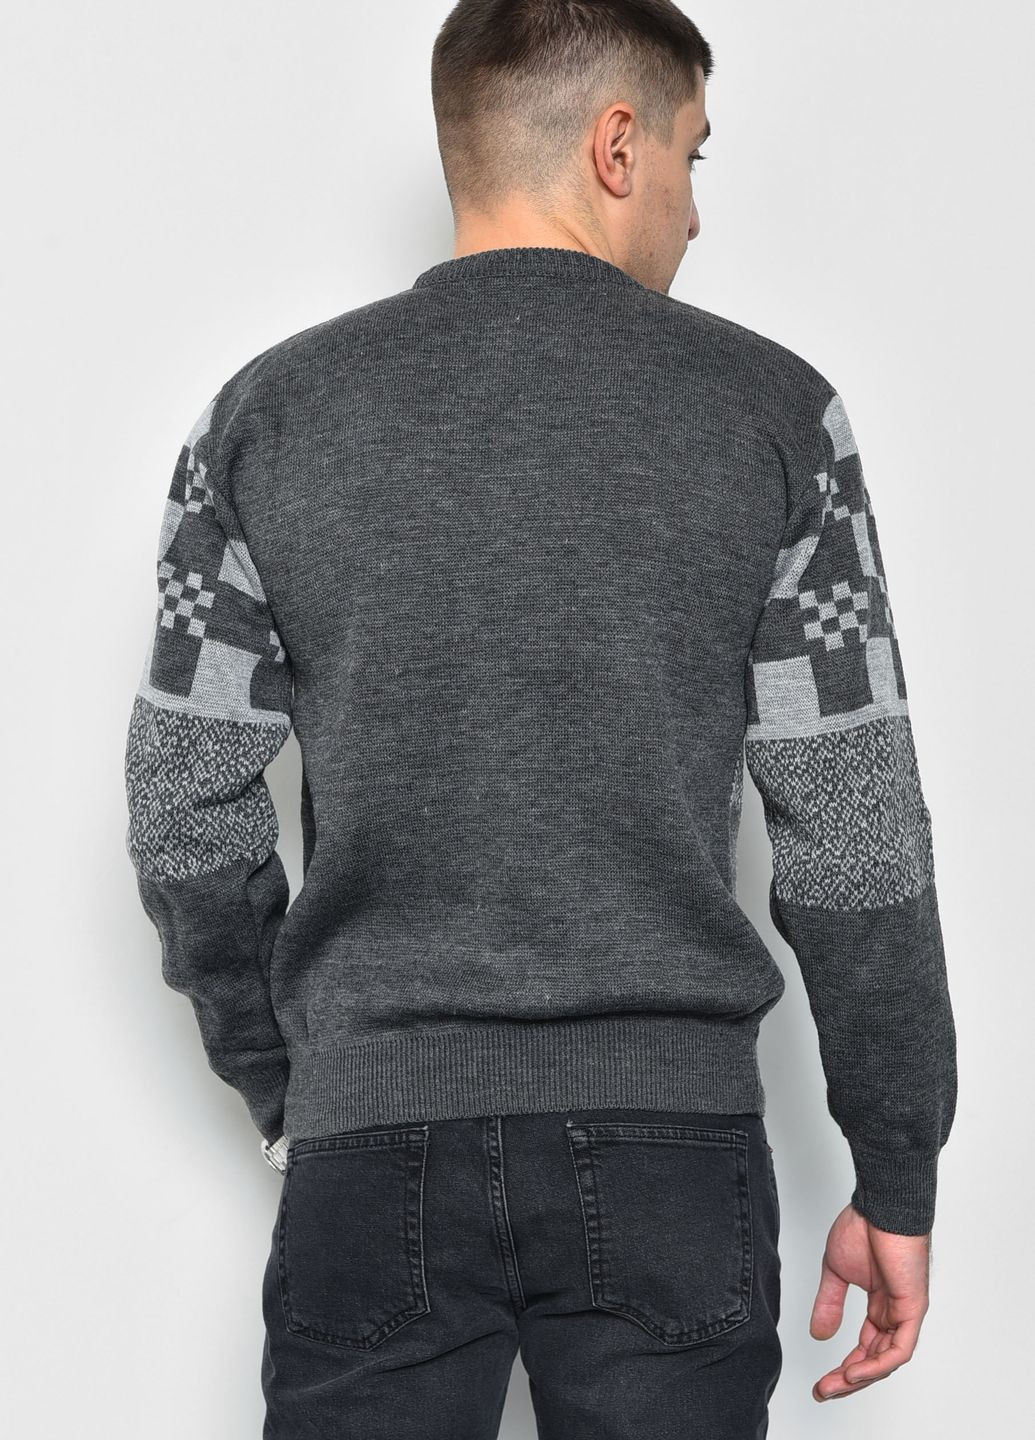 Бежевый демисезонный свитер мужской бежевого цвета пуловер Let's Shop